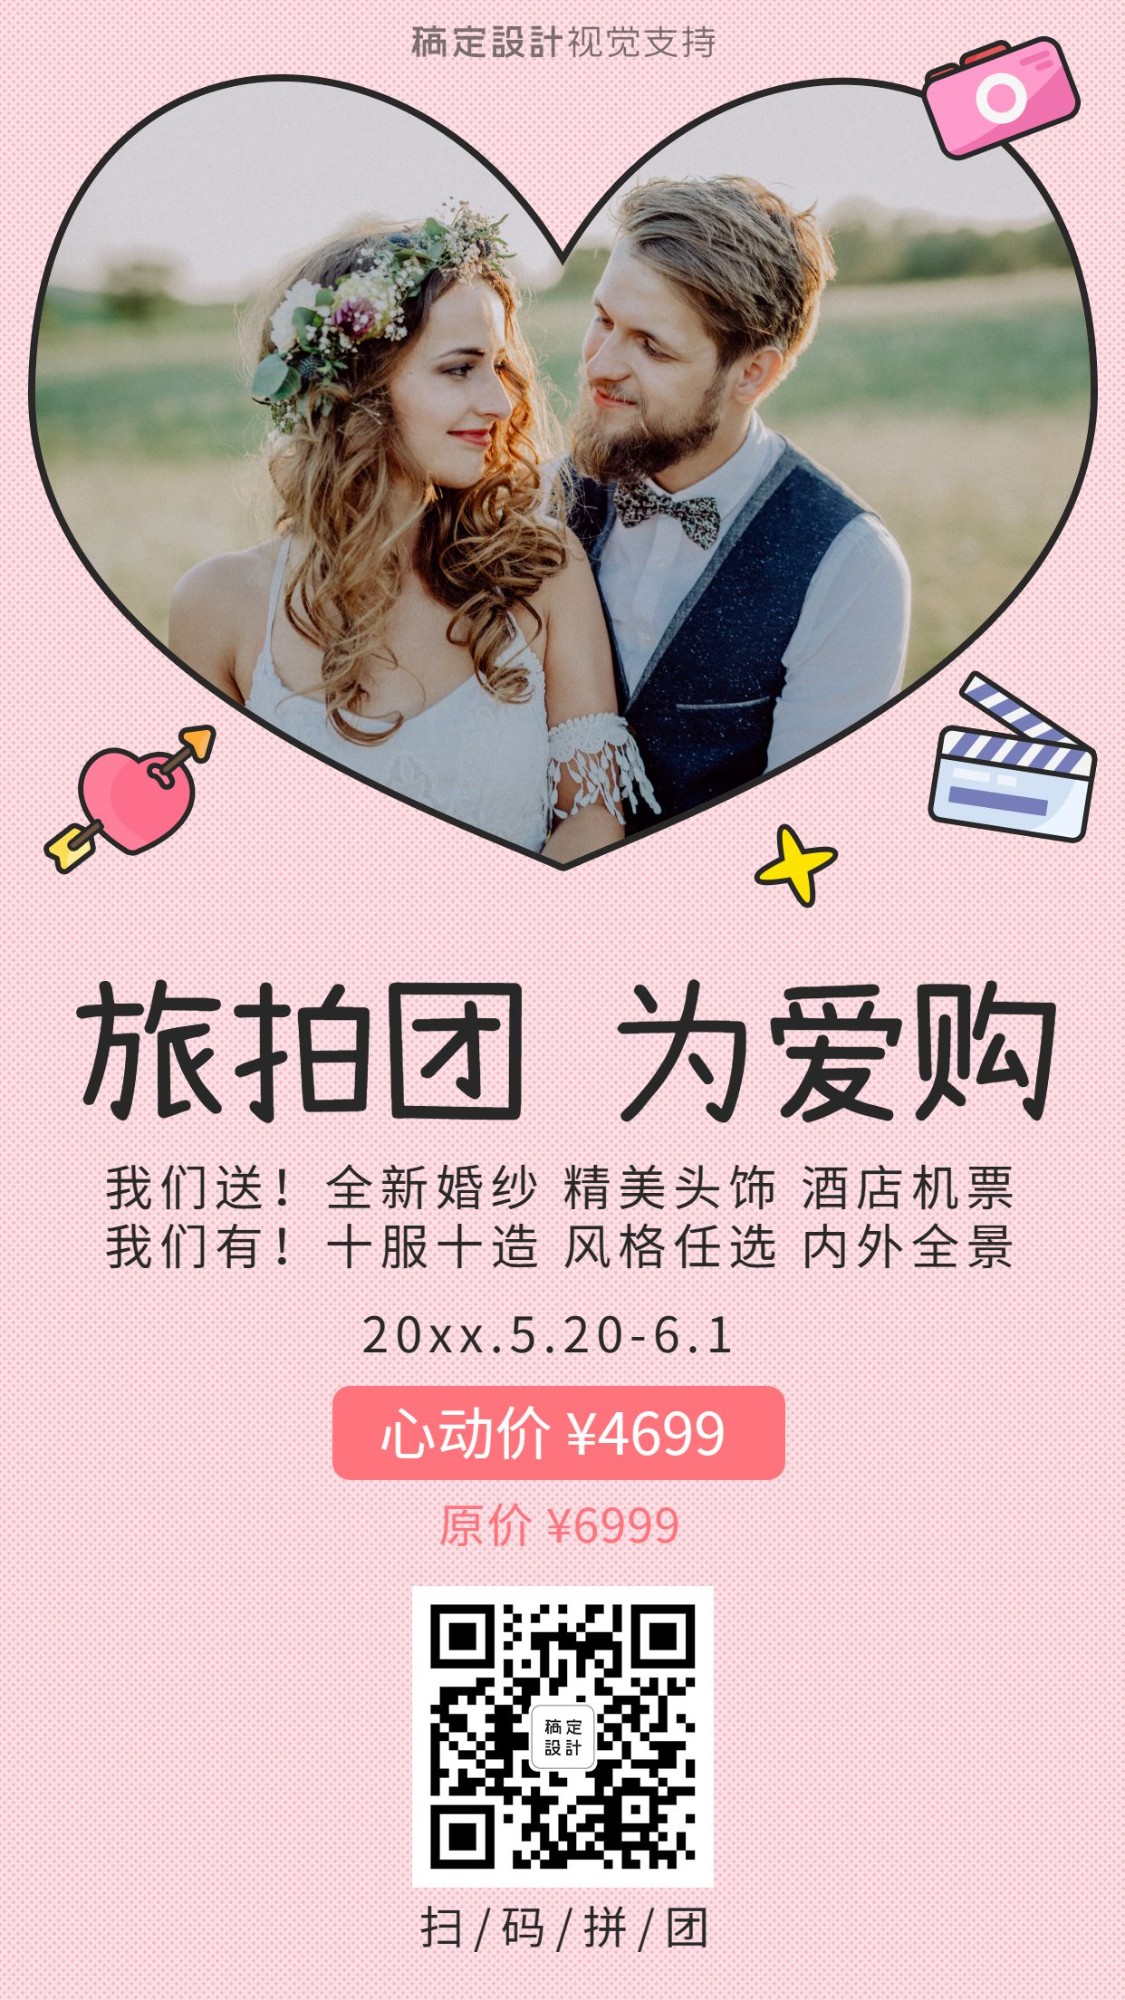 520情人节旅拍为爱购婚纱摄影相册活动促销